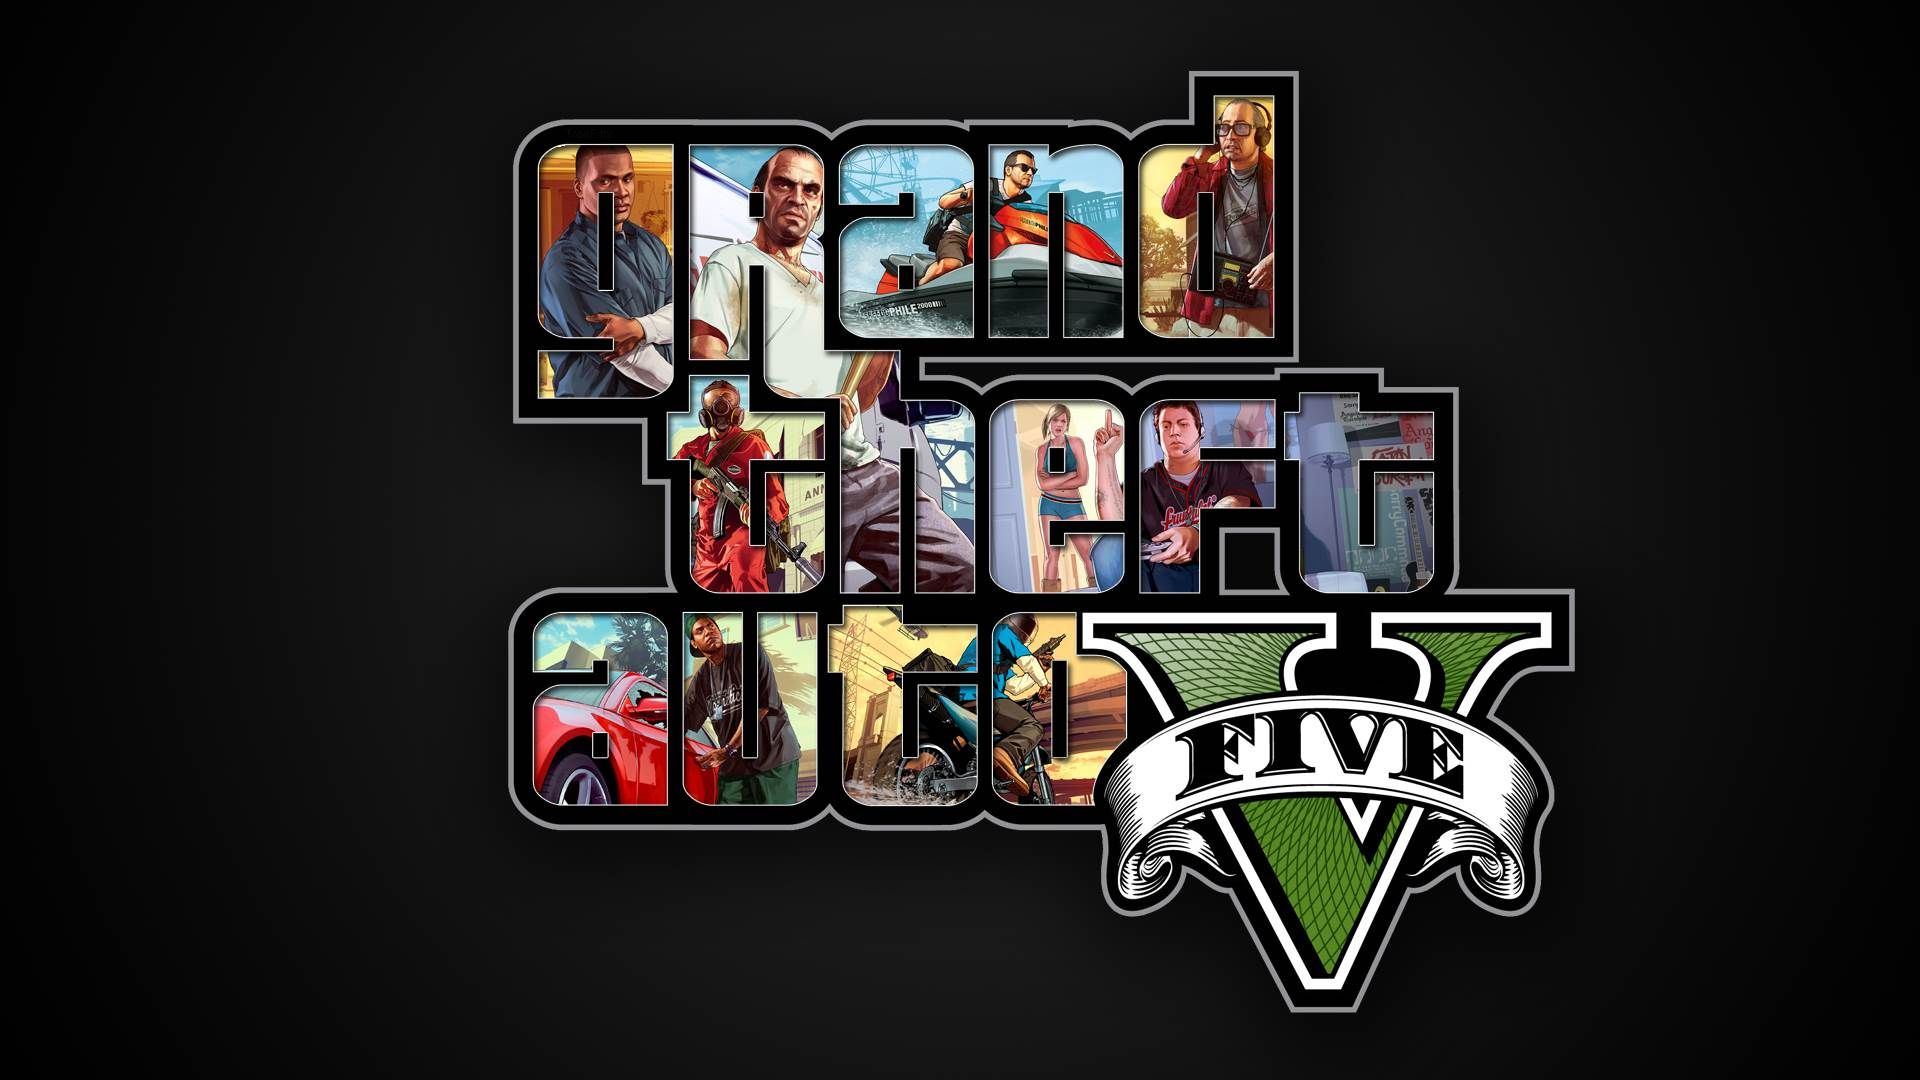 Gta 5 Wallpaper Free - Grand Theft Auto V Wallpaper 4k - HD Wallpaper 